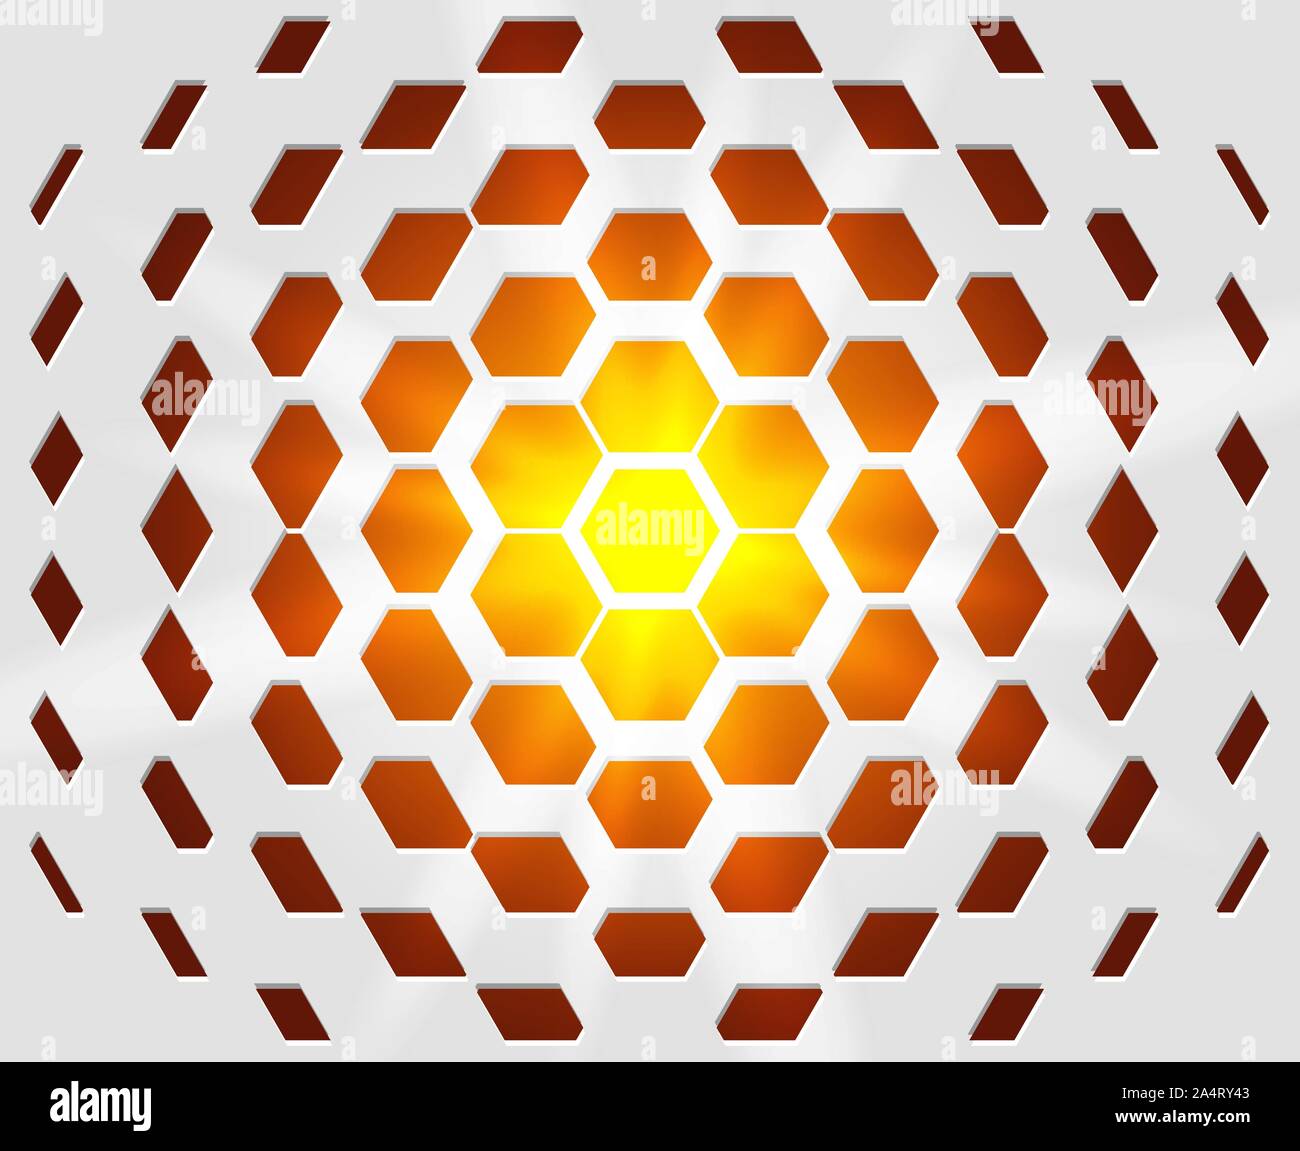 Abstrakte industrielle realistische Prägung Band sechseckige Textur, deprimiert 3d Hexagon weißer Hintergrund, geometrischen Rasters. Hot orange und gelb flare Stock Vektor